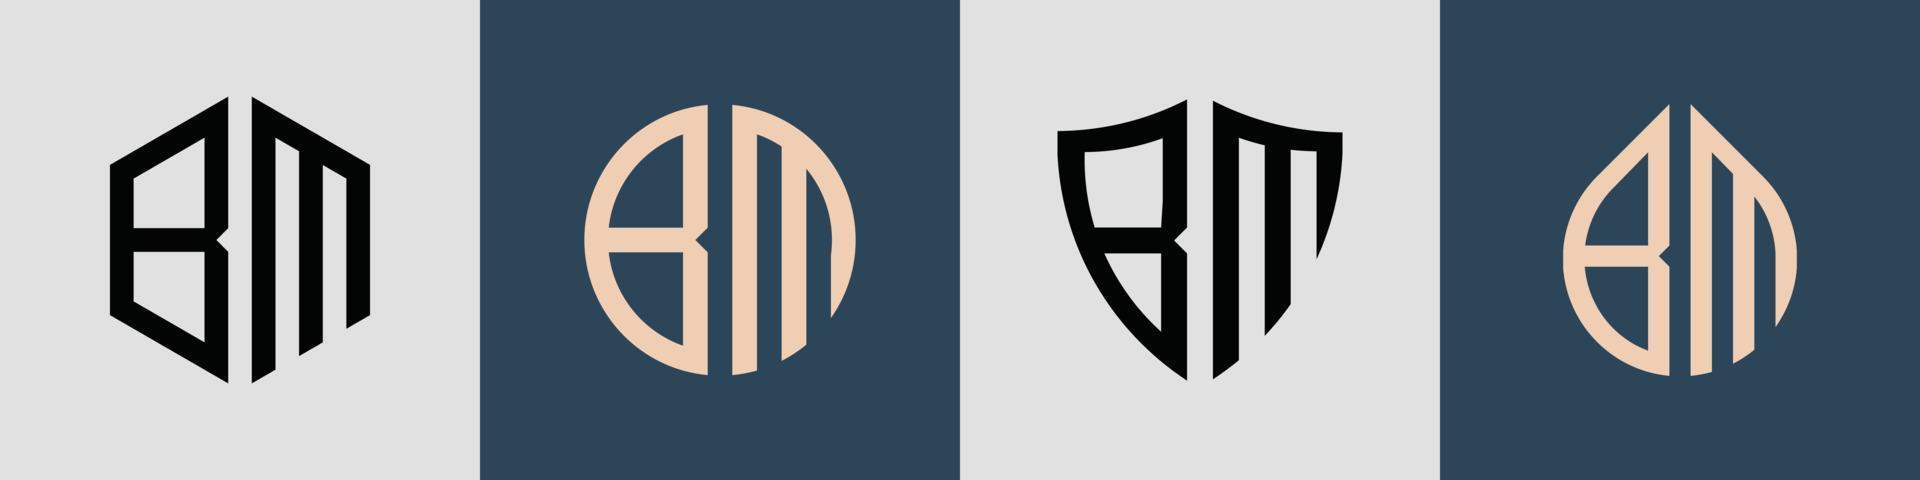 Creative simple Initial Letters BM Logo Designs Bundle. vector